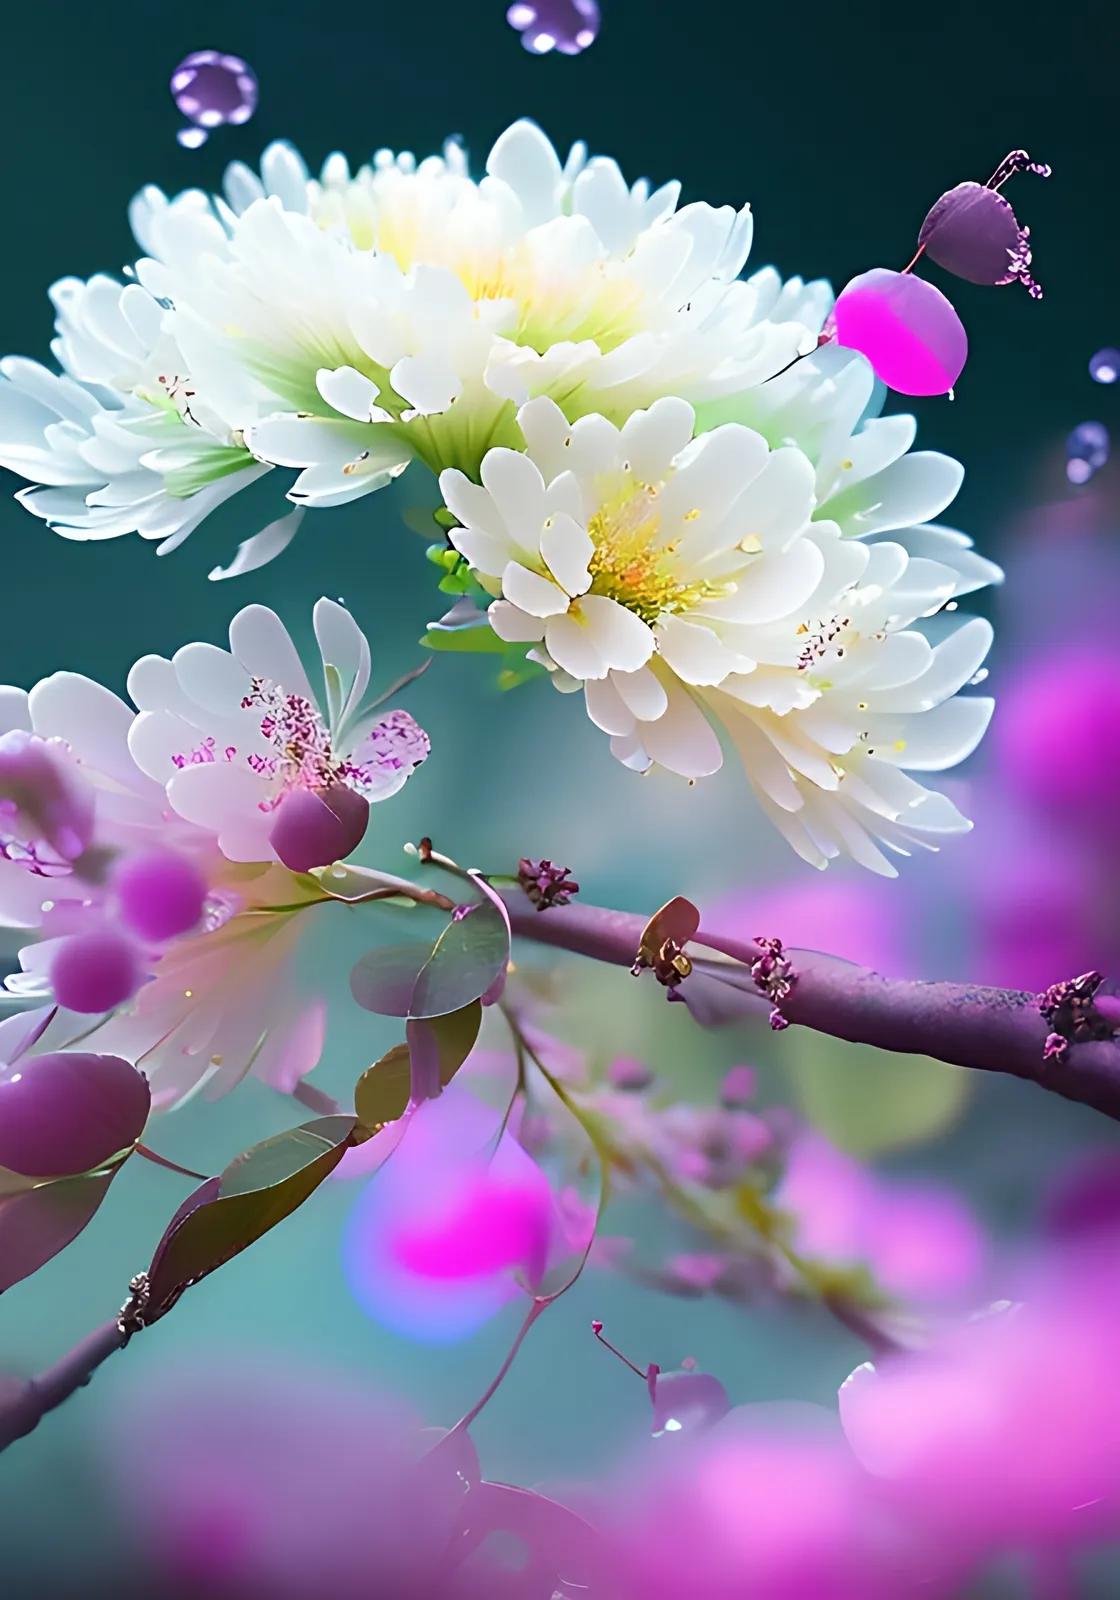 【赏花】一组唯美的花卉摄影作品